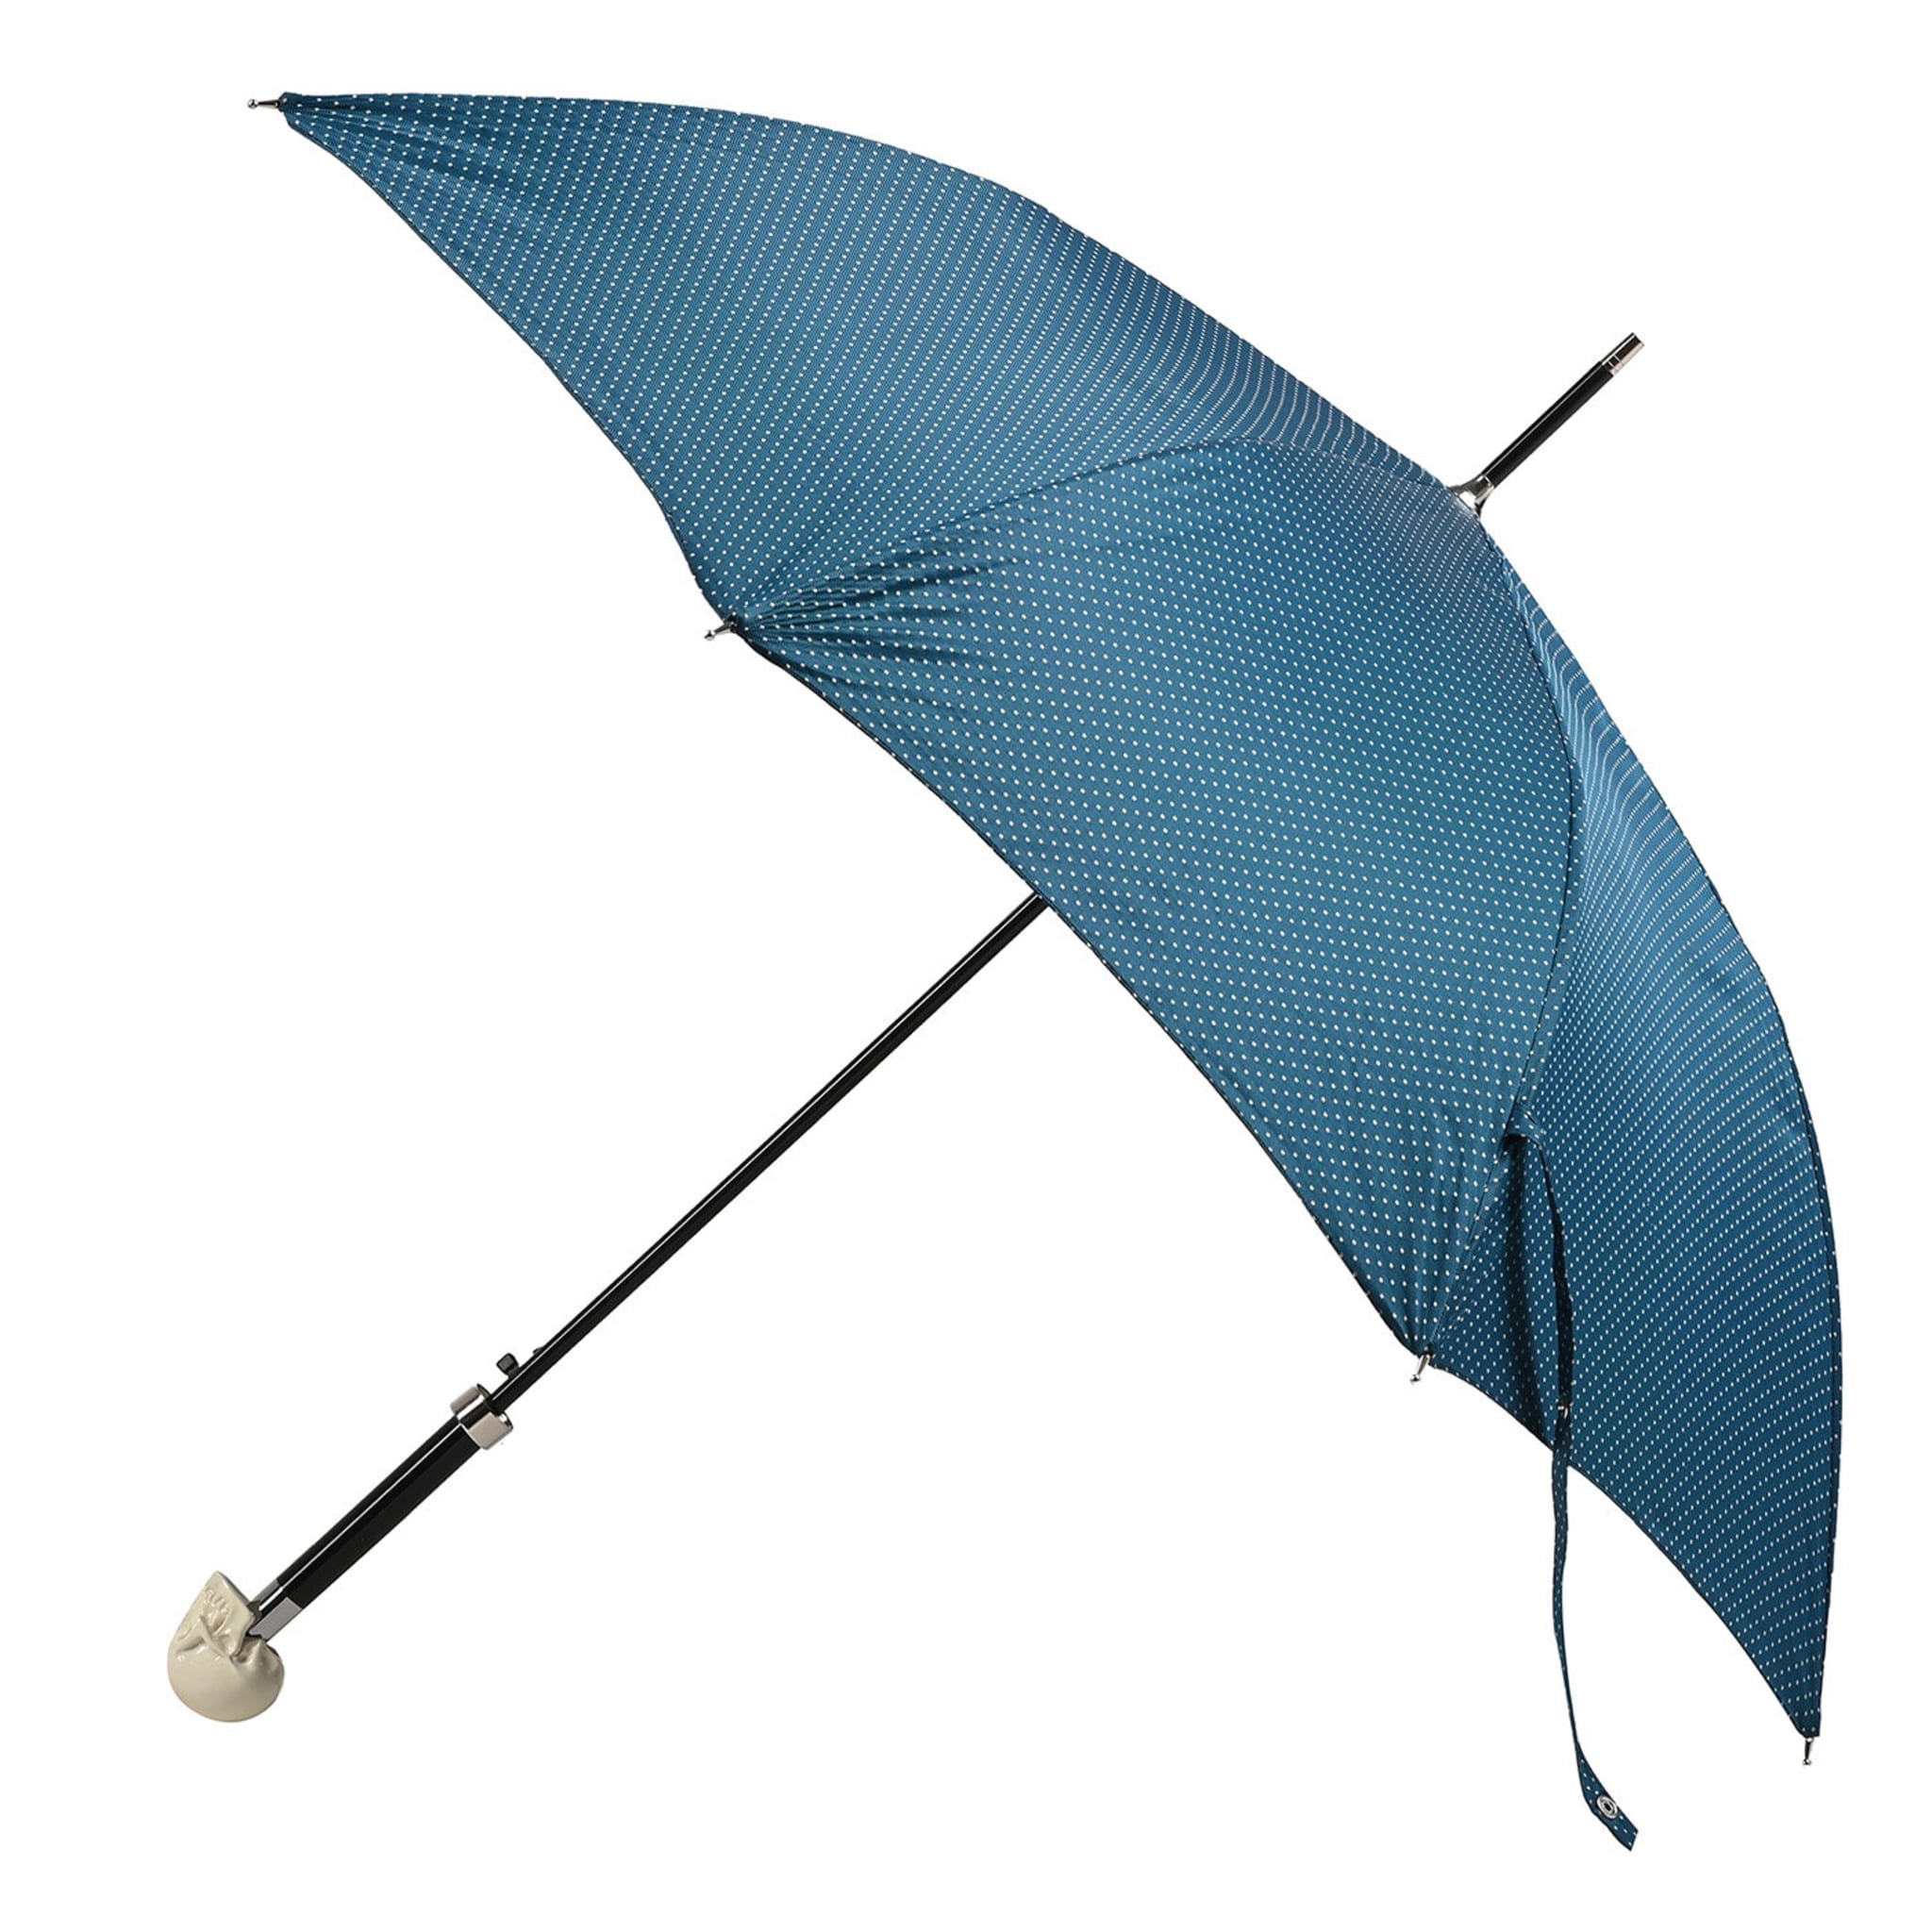 Blaugrüner und weiß gepunkteter Regenschirm mit fluoreszierendem Totenkopf-Griff - Hauptansicht